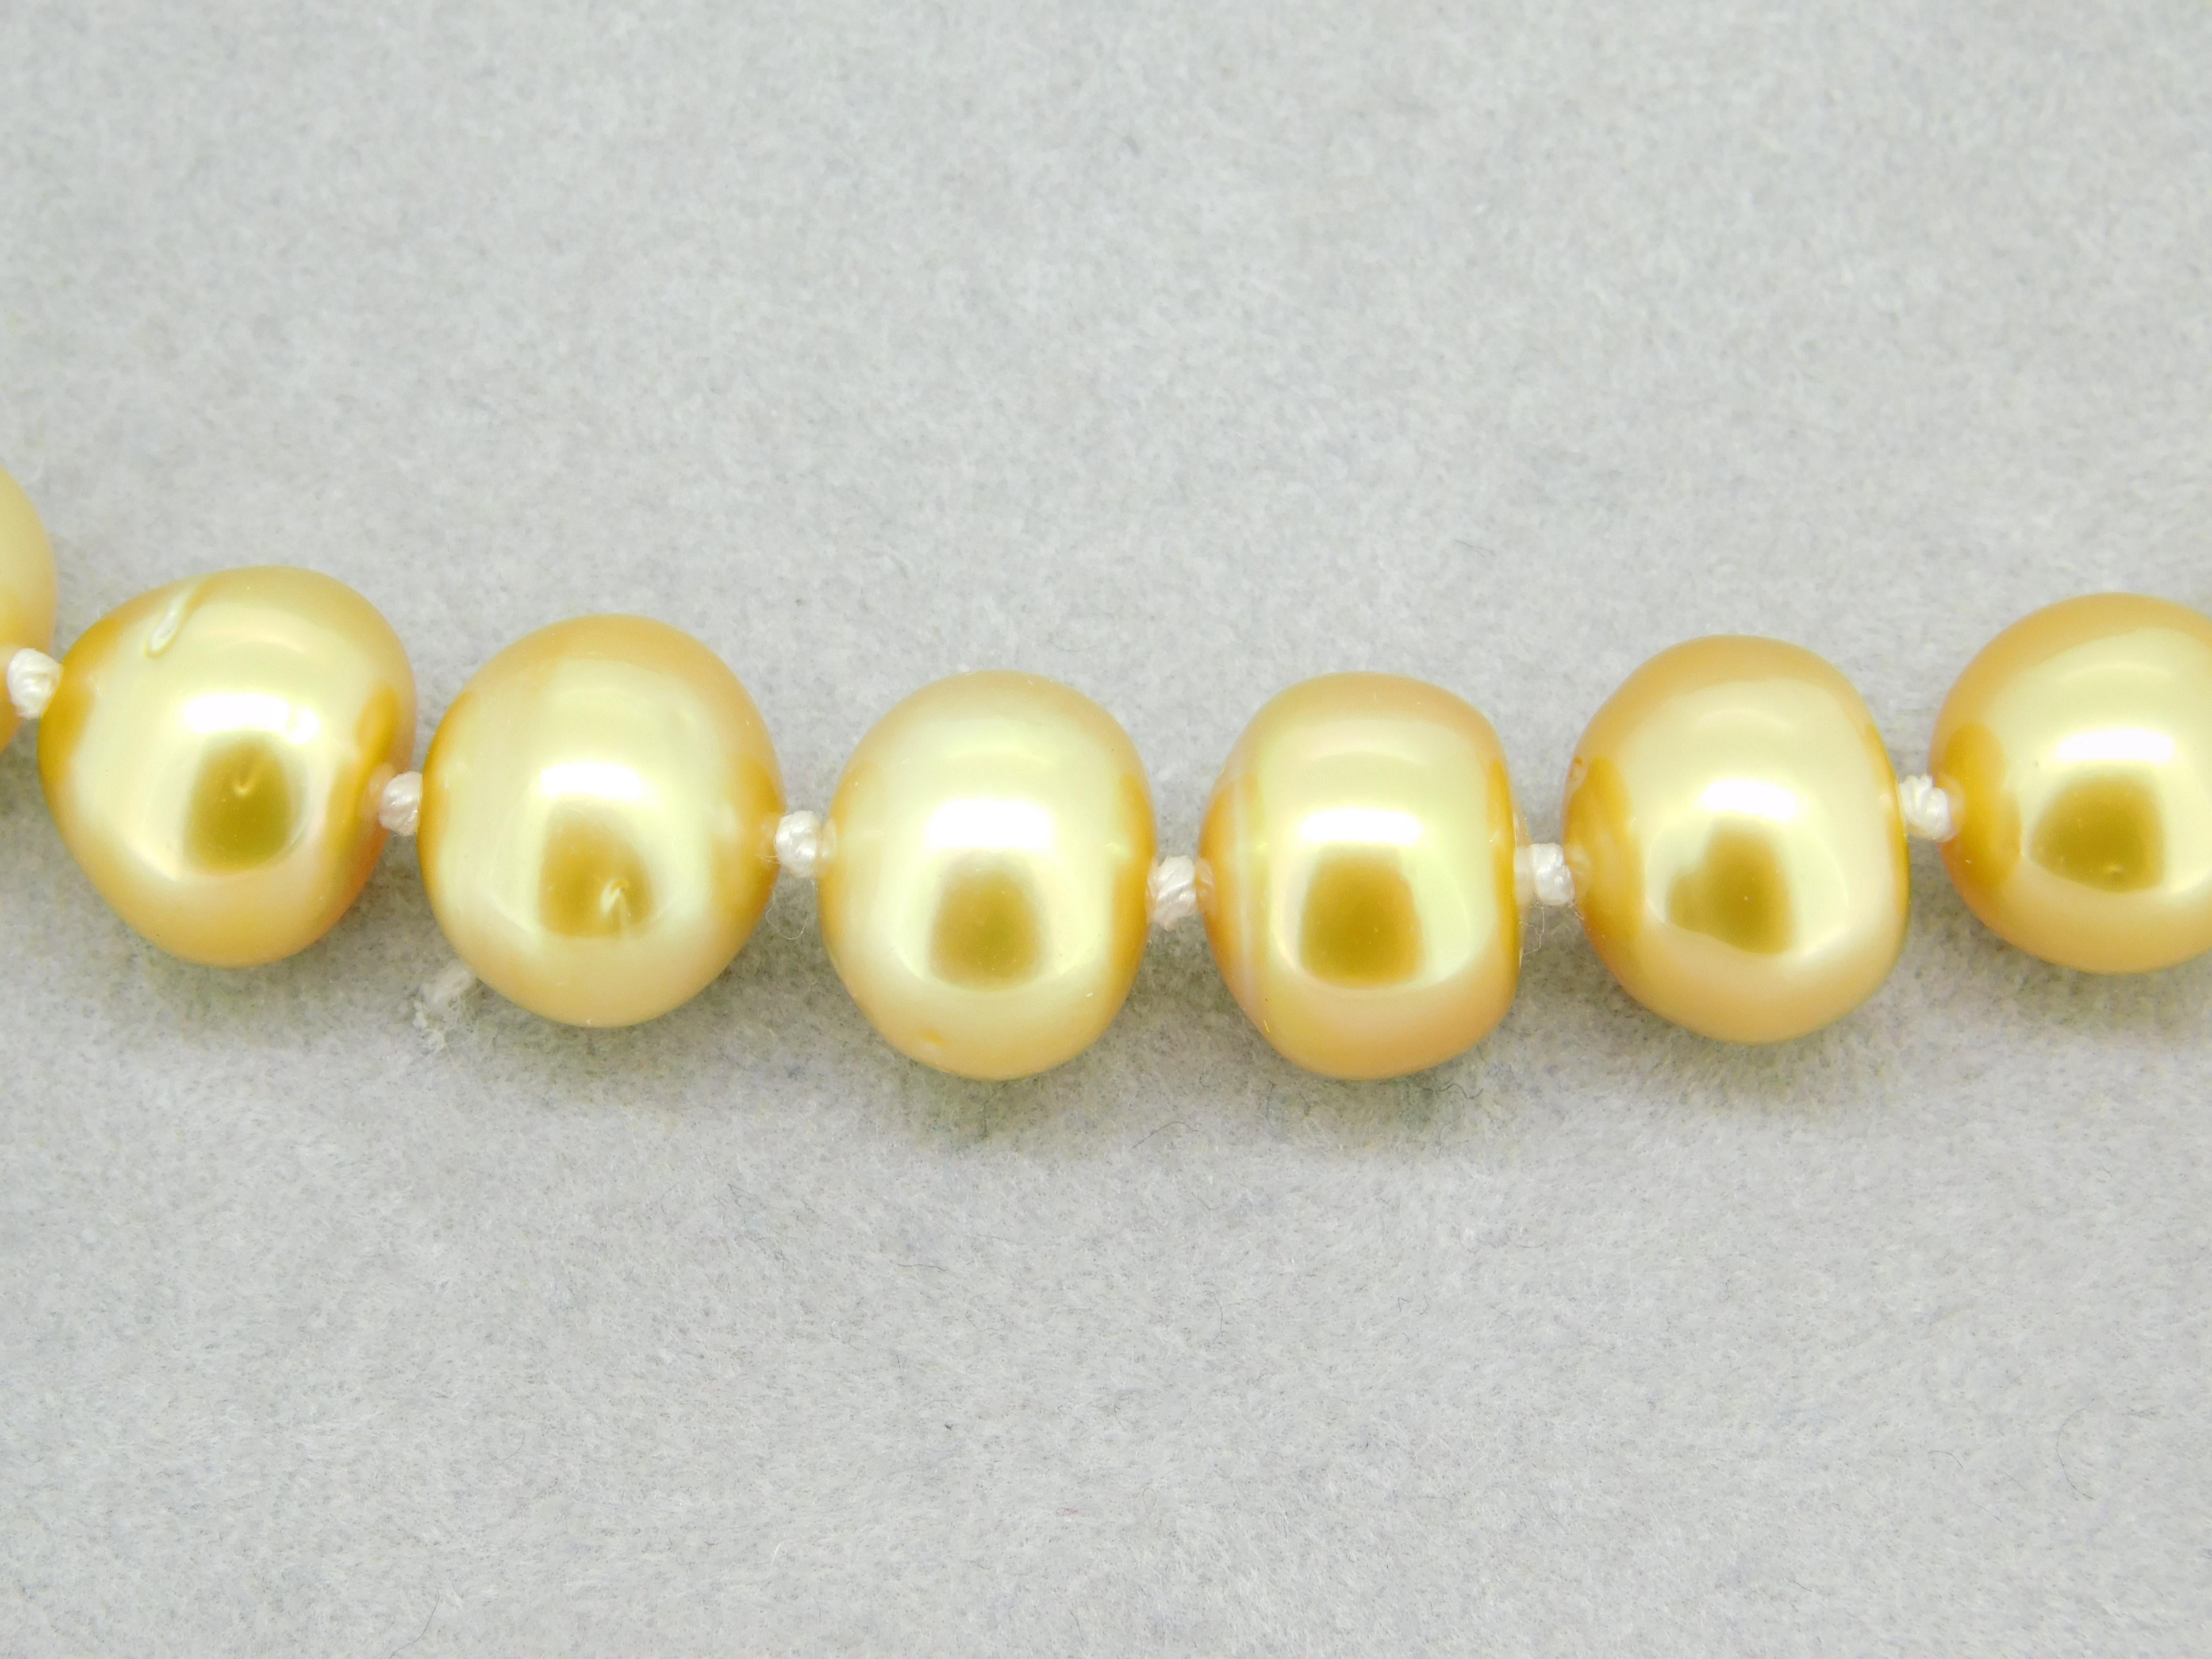 Collier de perles des mers du Sud de 9 mm avec fermoir en or jaune 14k (#J4569)

Cordon de perles de culture de Tahiti des mers du sud, de couleur dorée. Les perles sont de forme ronde à semi-ronde, cultivées en Polynésie française. Couleur dorée